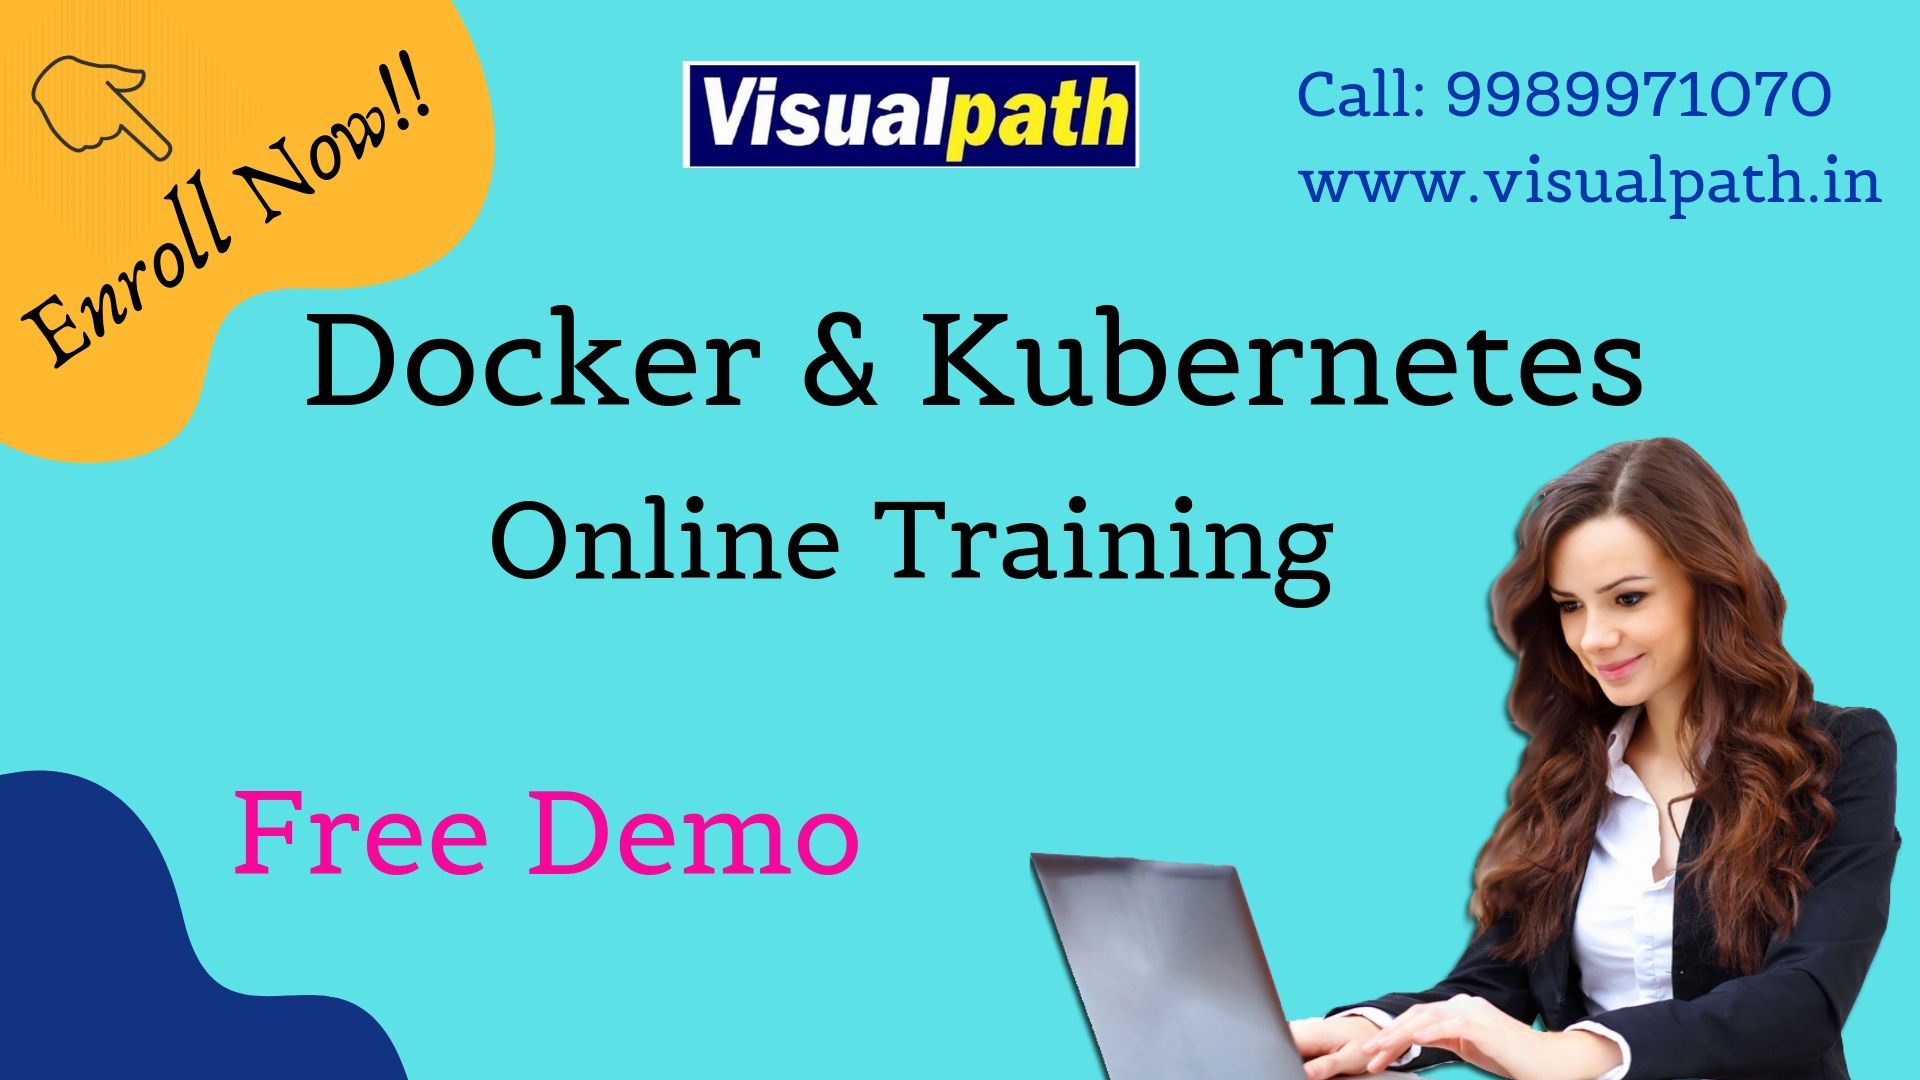 Docker and Kubernetes Online Training, Hyderabad, Telangana, India